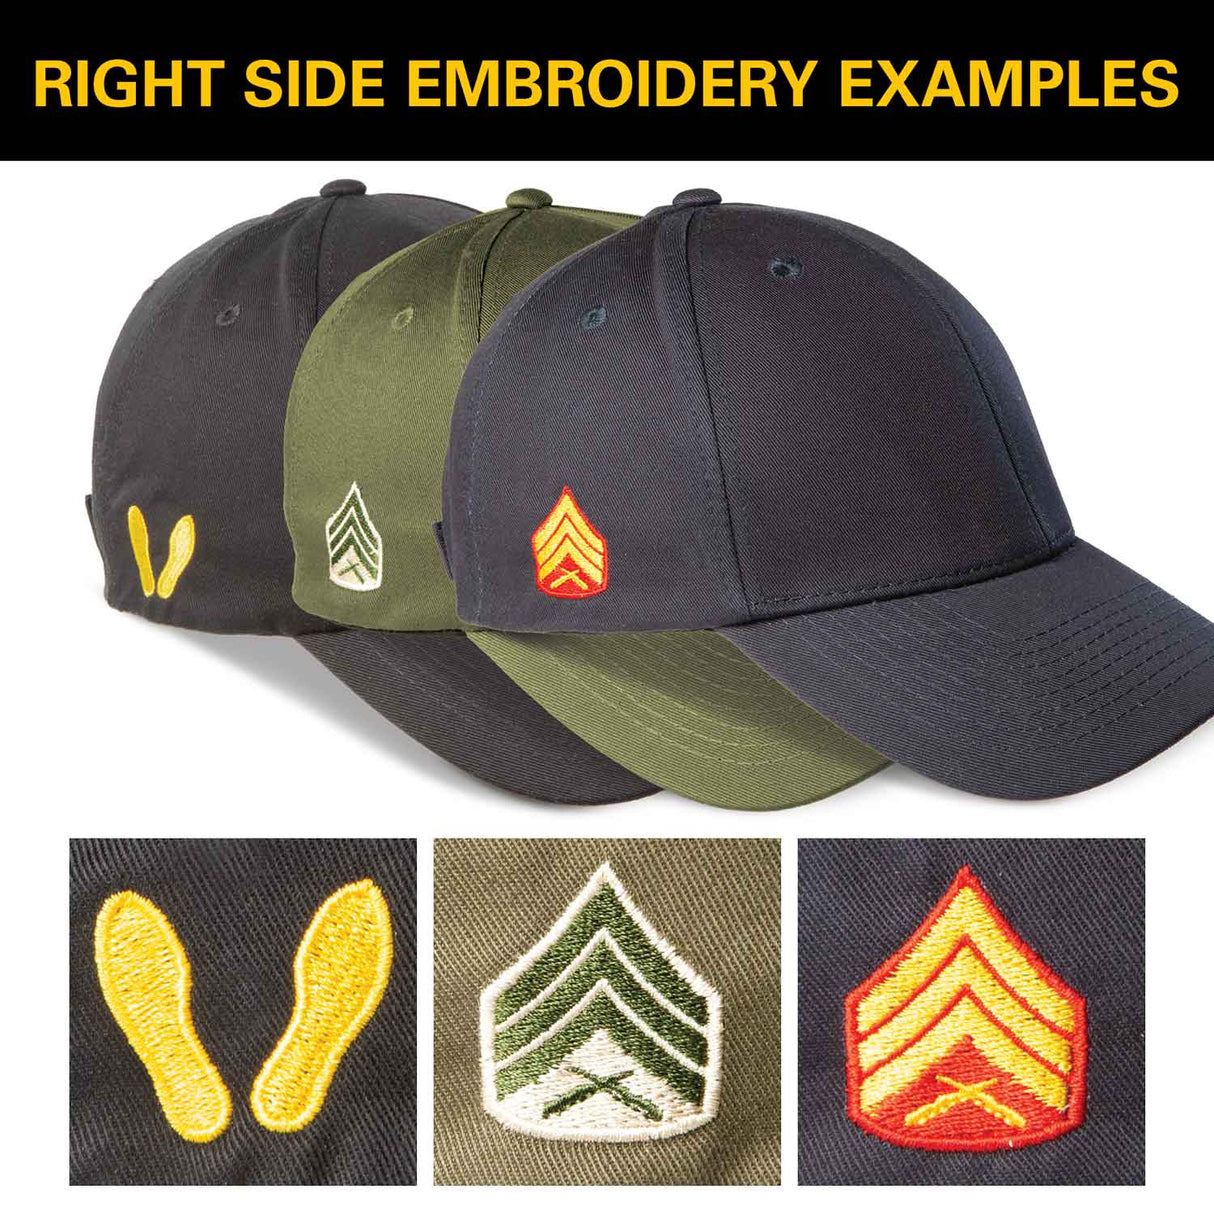 Semper Fi U.S. Marine Corps Hat- Red - SGT GRIT